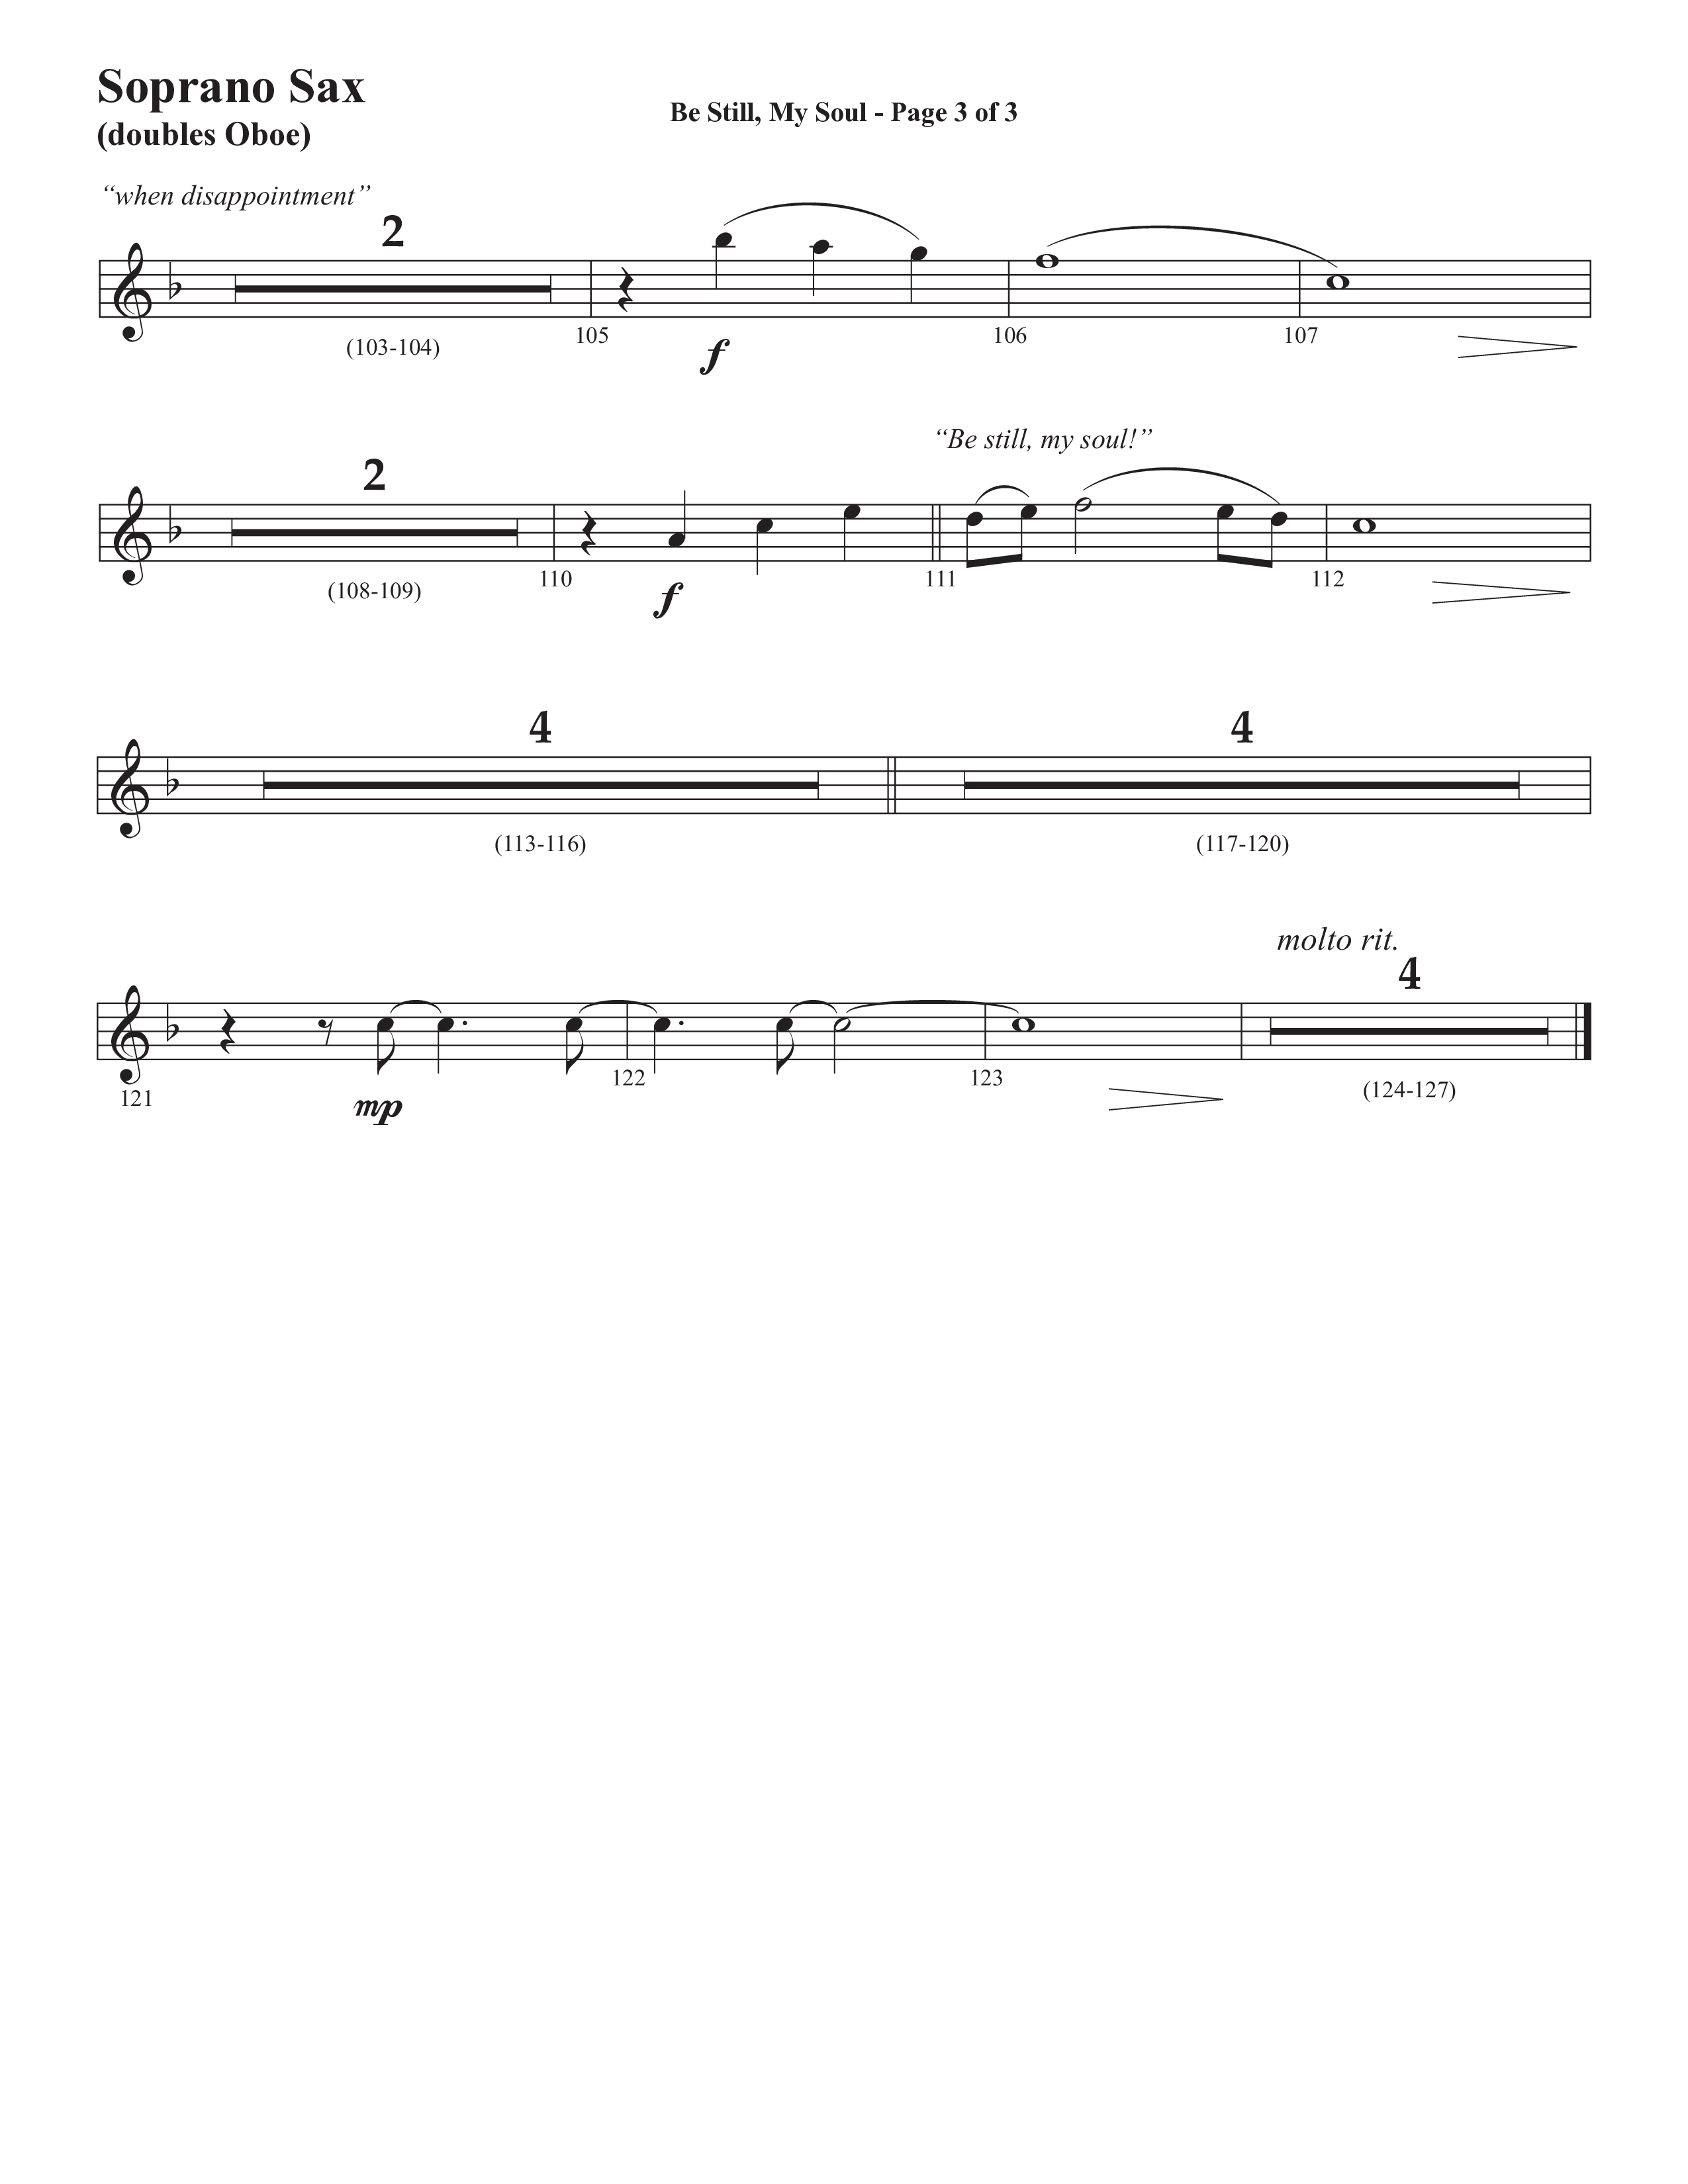 Be Still My Soul (Choral Anthem SATB) Soprano Sax (Semsen Music / Arr. Cliff Duren)